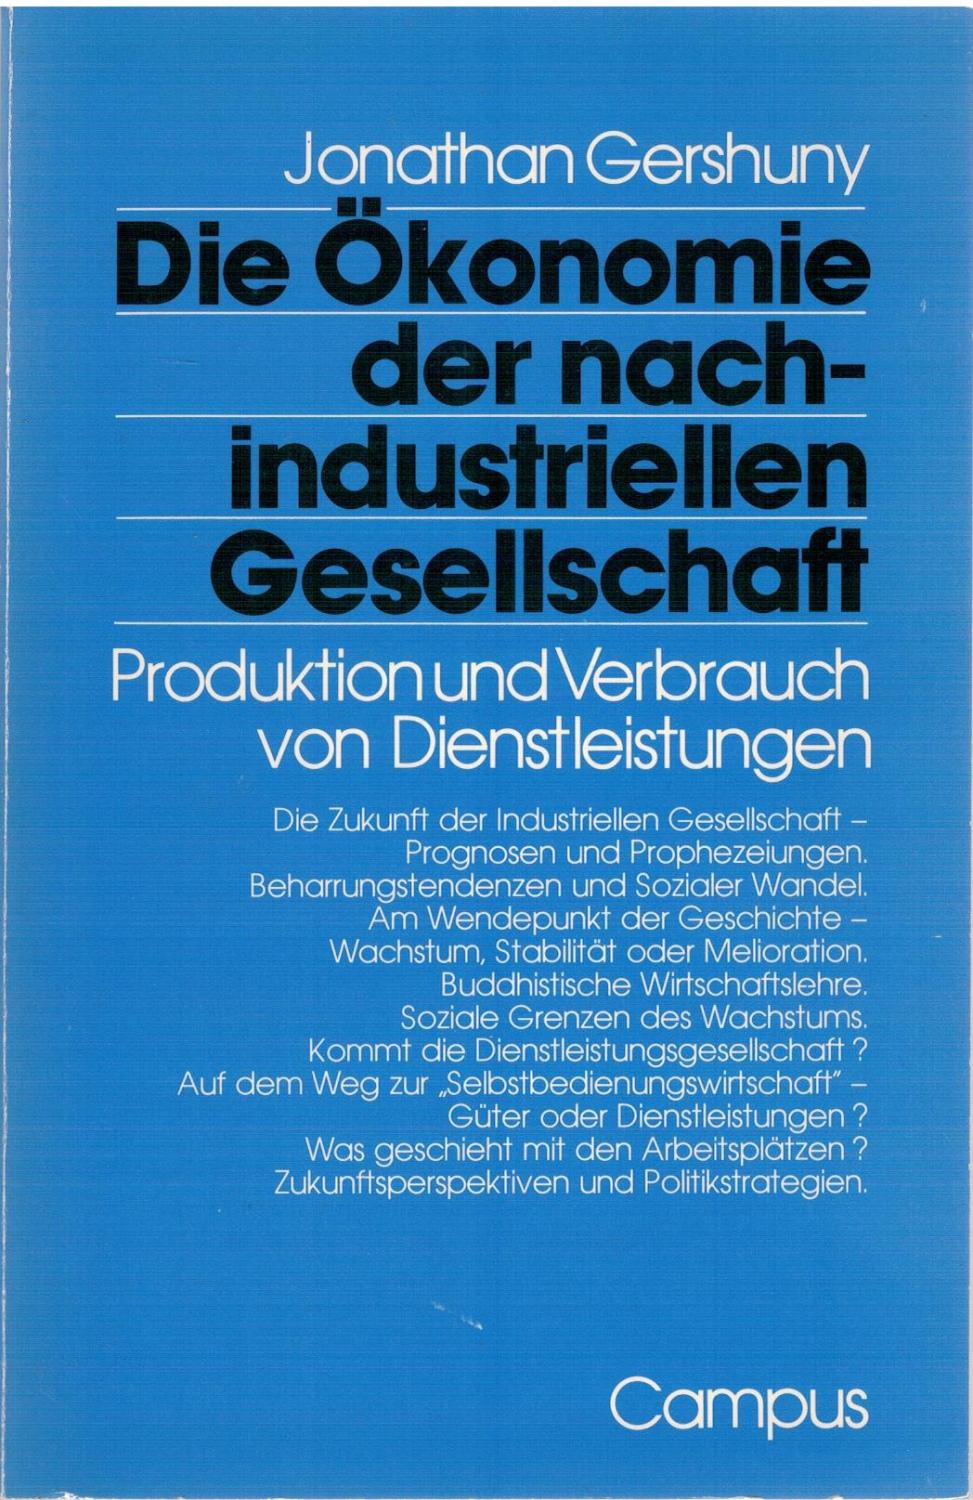 Die Ökonomie der nachindustriellen Gesellschaft - Produktion und Verbrauch von Dienstleistungen - Gershuny, Jonathan